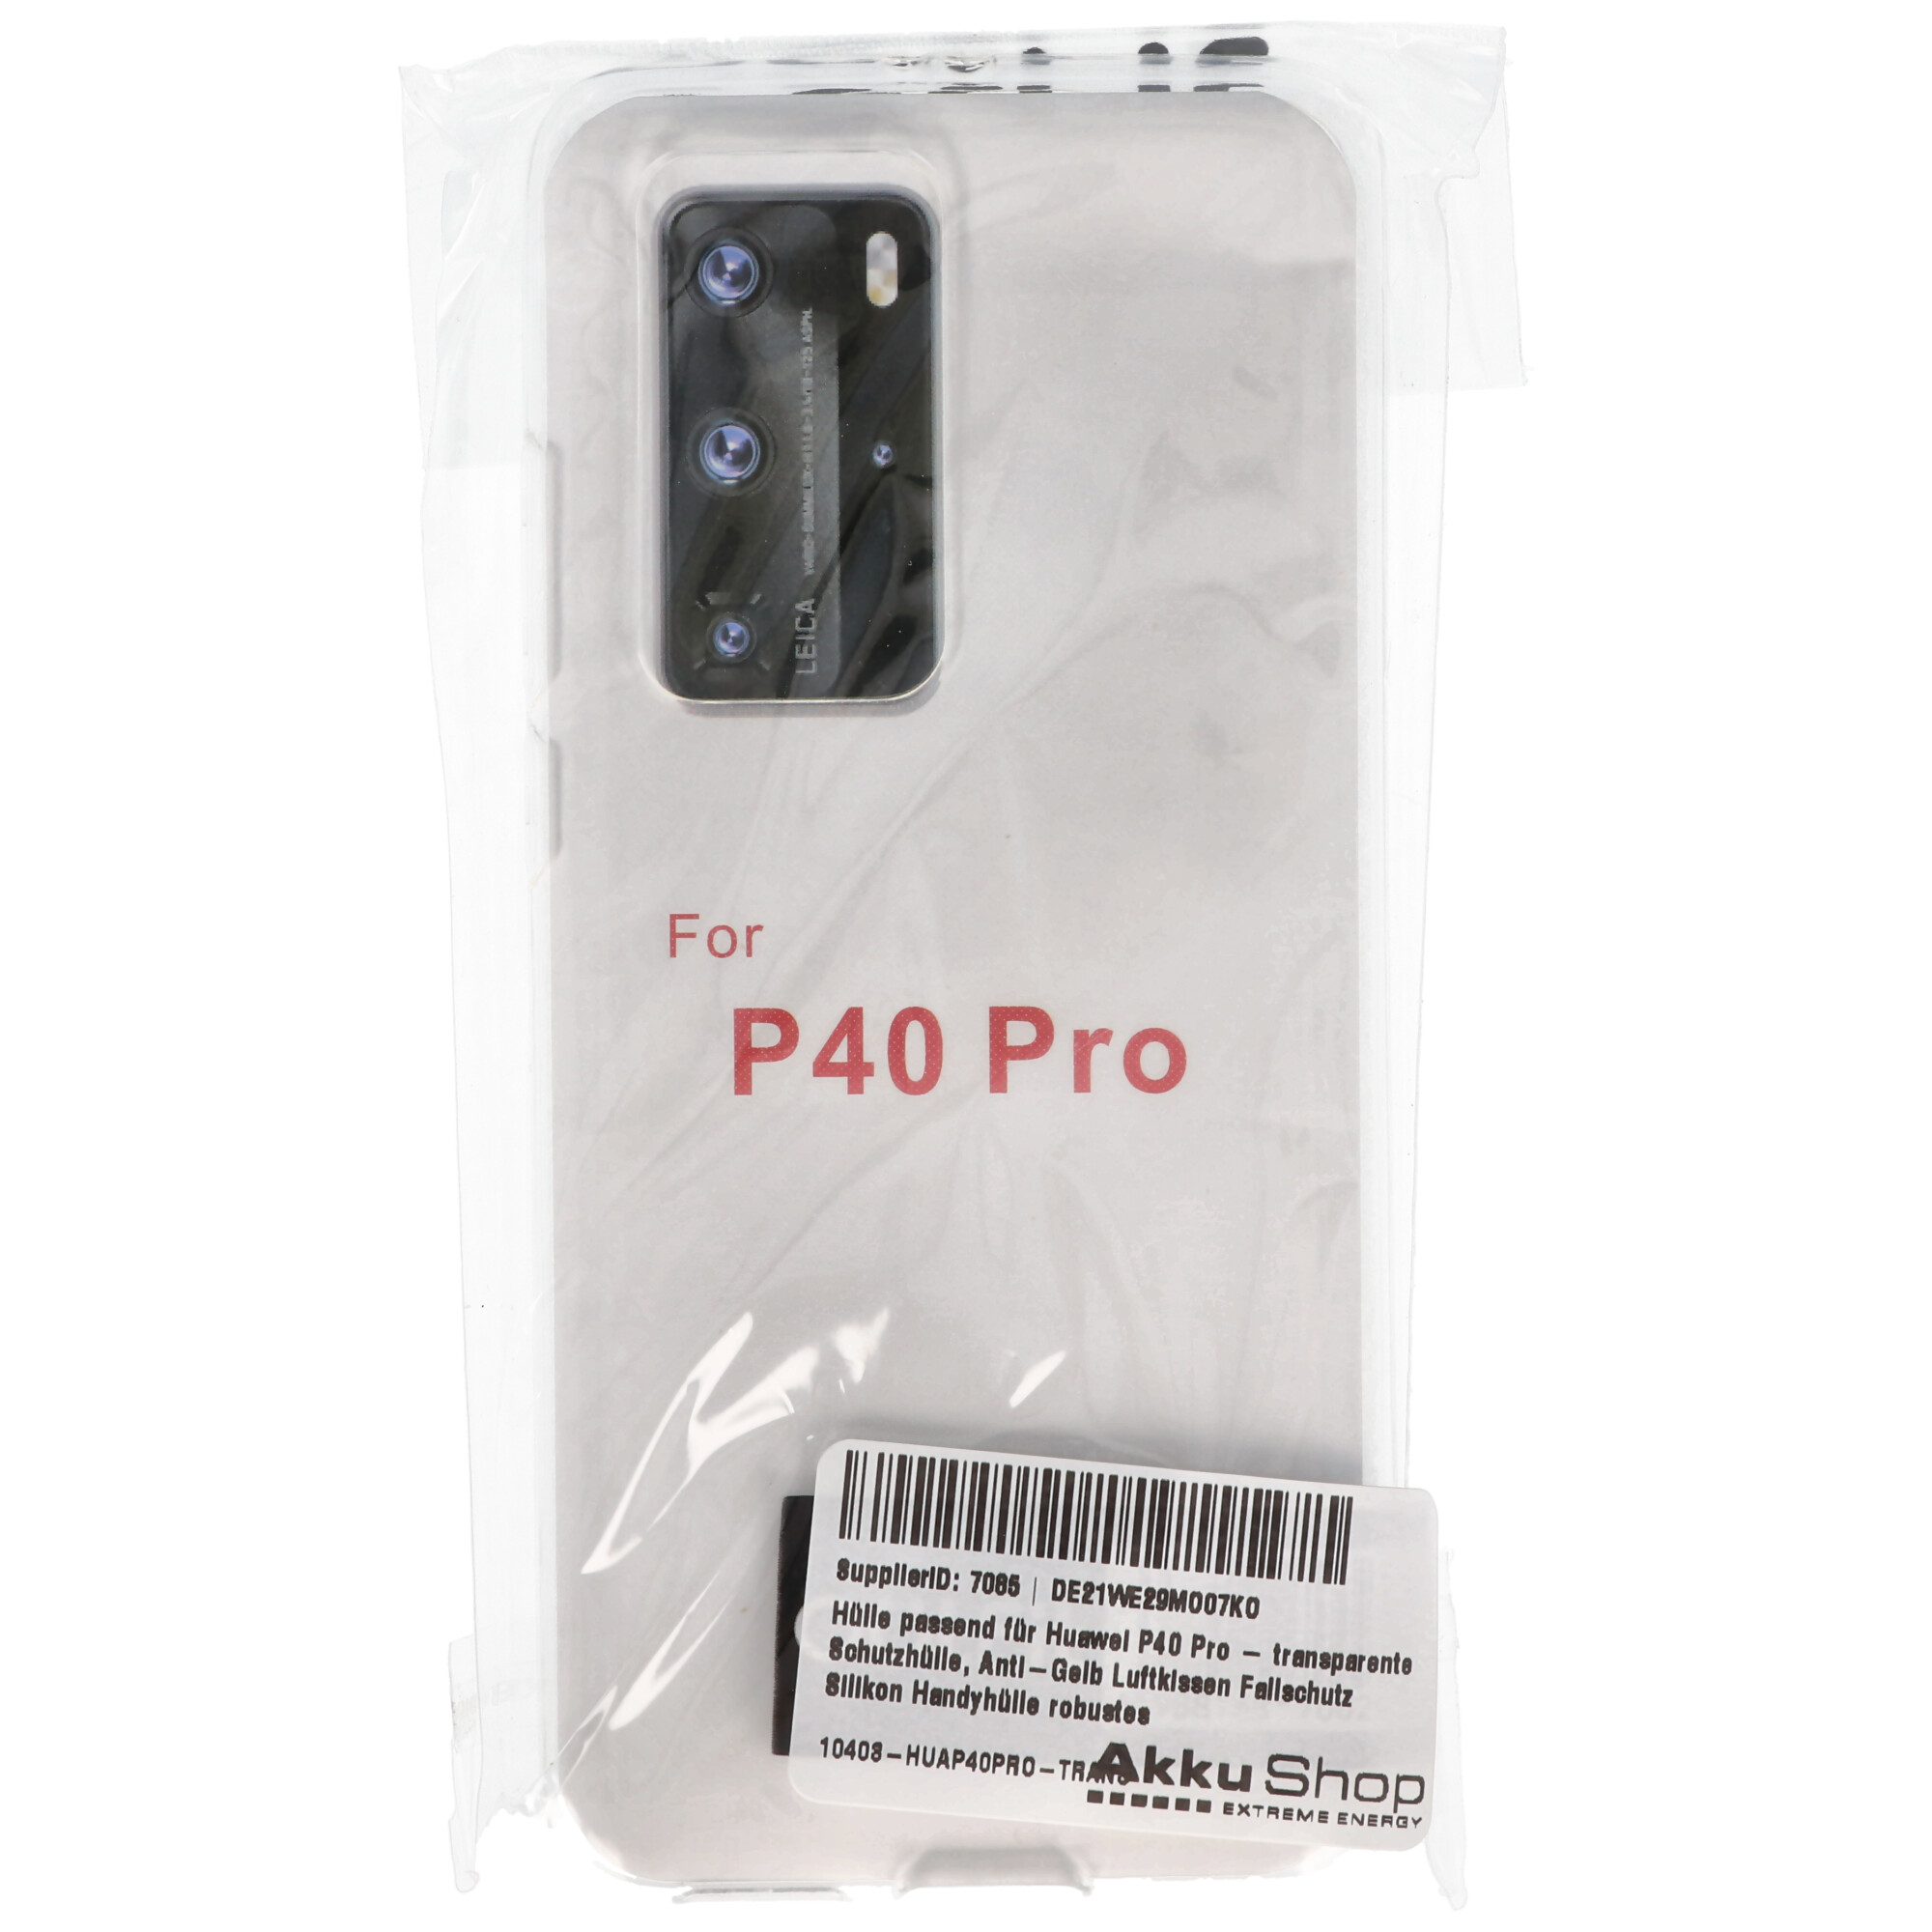 Hülle passend für Huawei P40 Pro - transparente Schutzhülle, Anti-Gelb Luftkissen Fallschutz Silikon Handyhülle robustes TPU Case